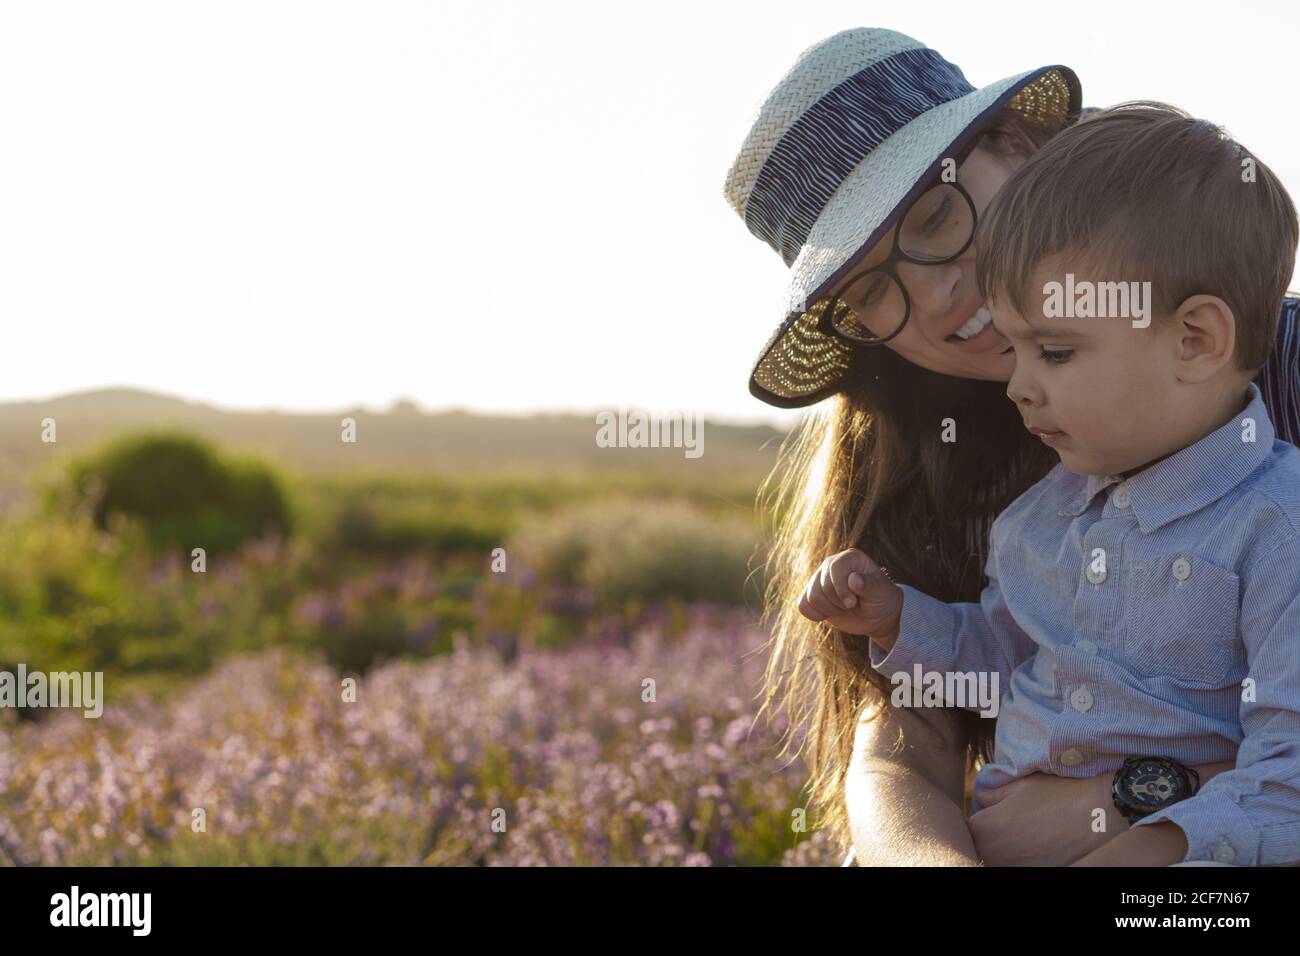 Große Familie, Vaterschaft, Kindheit, Mutterschaft, provence Stil Konzept - glückliche junge Mutter sitzt auf Korbstuhl mit kleinen Jungen Sohn auf Lavendel Stockfoto